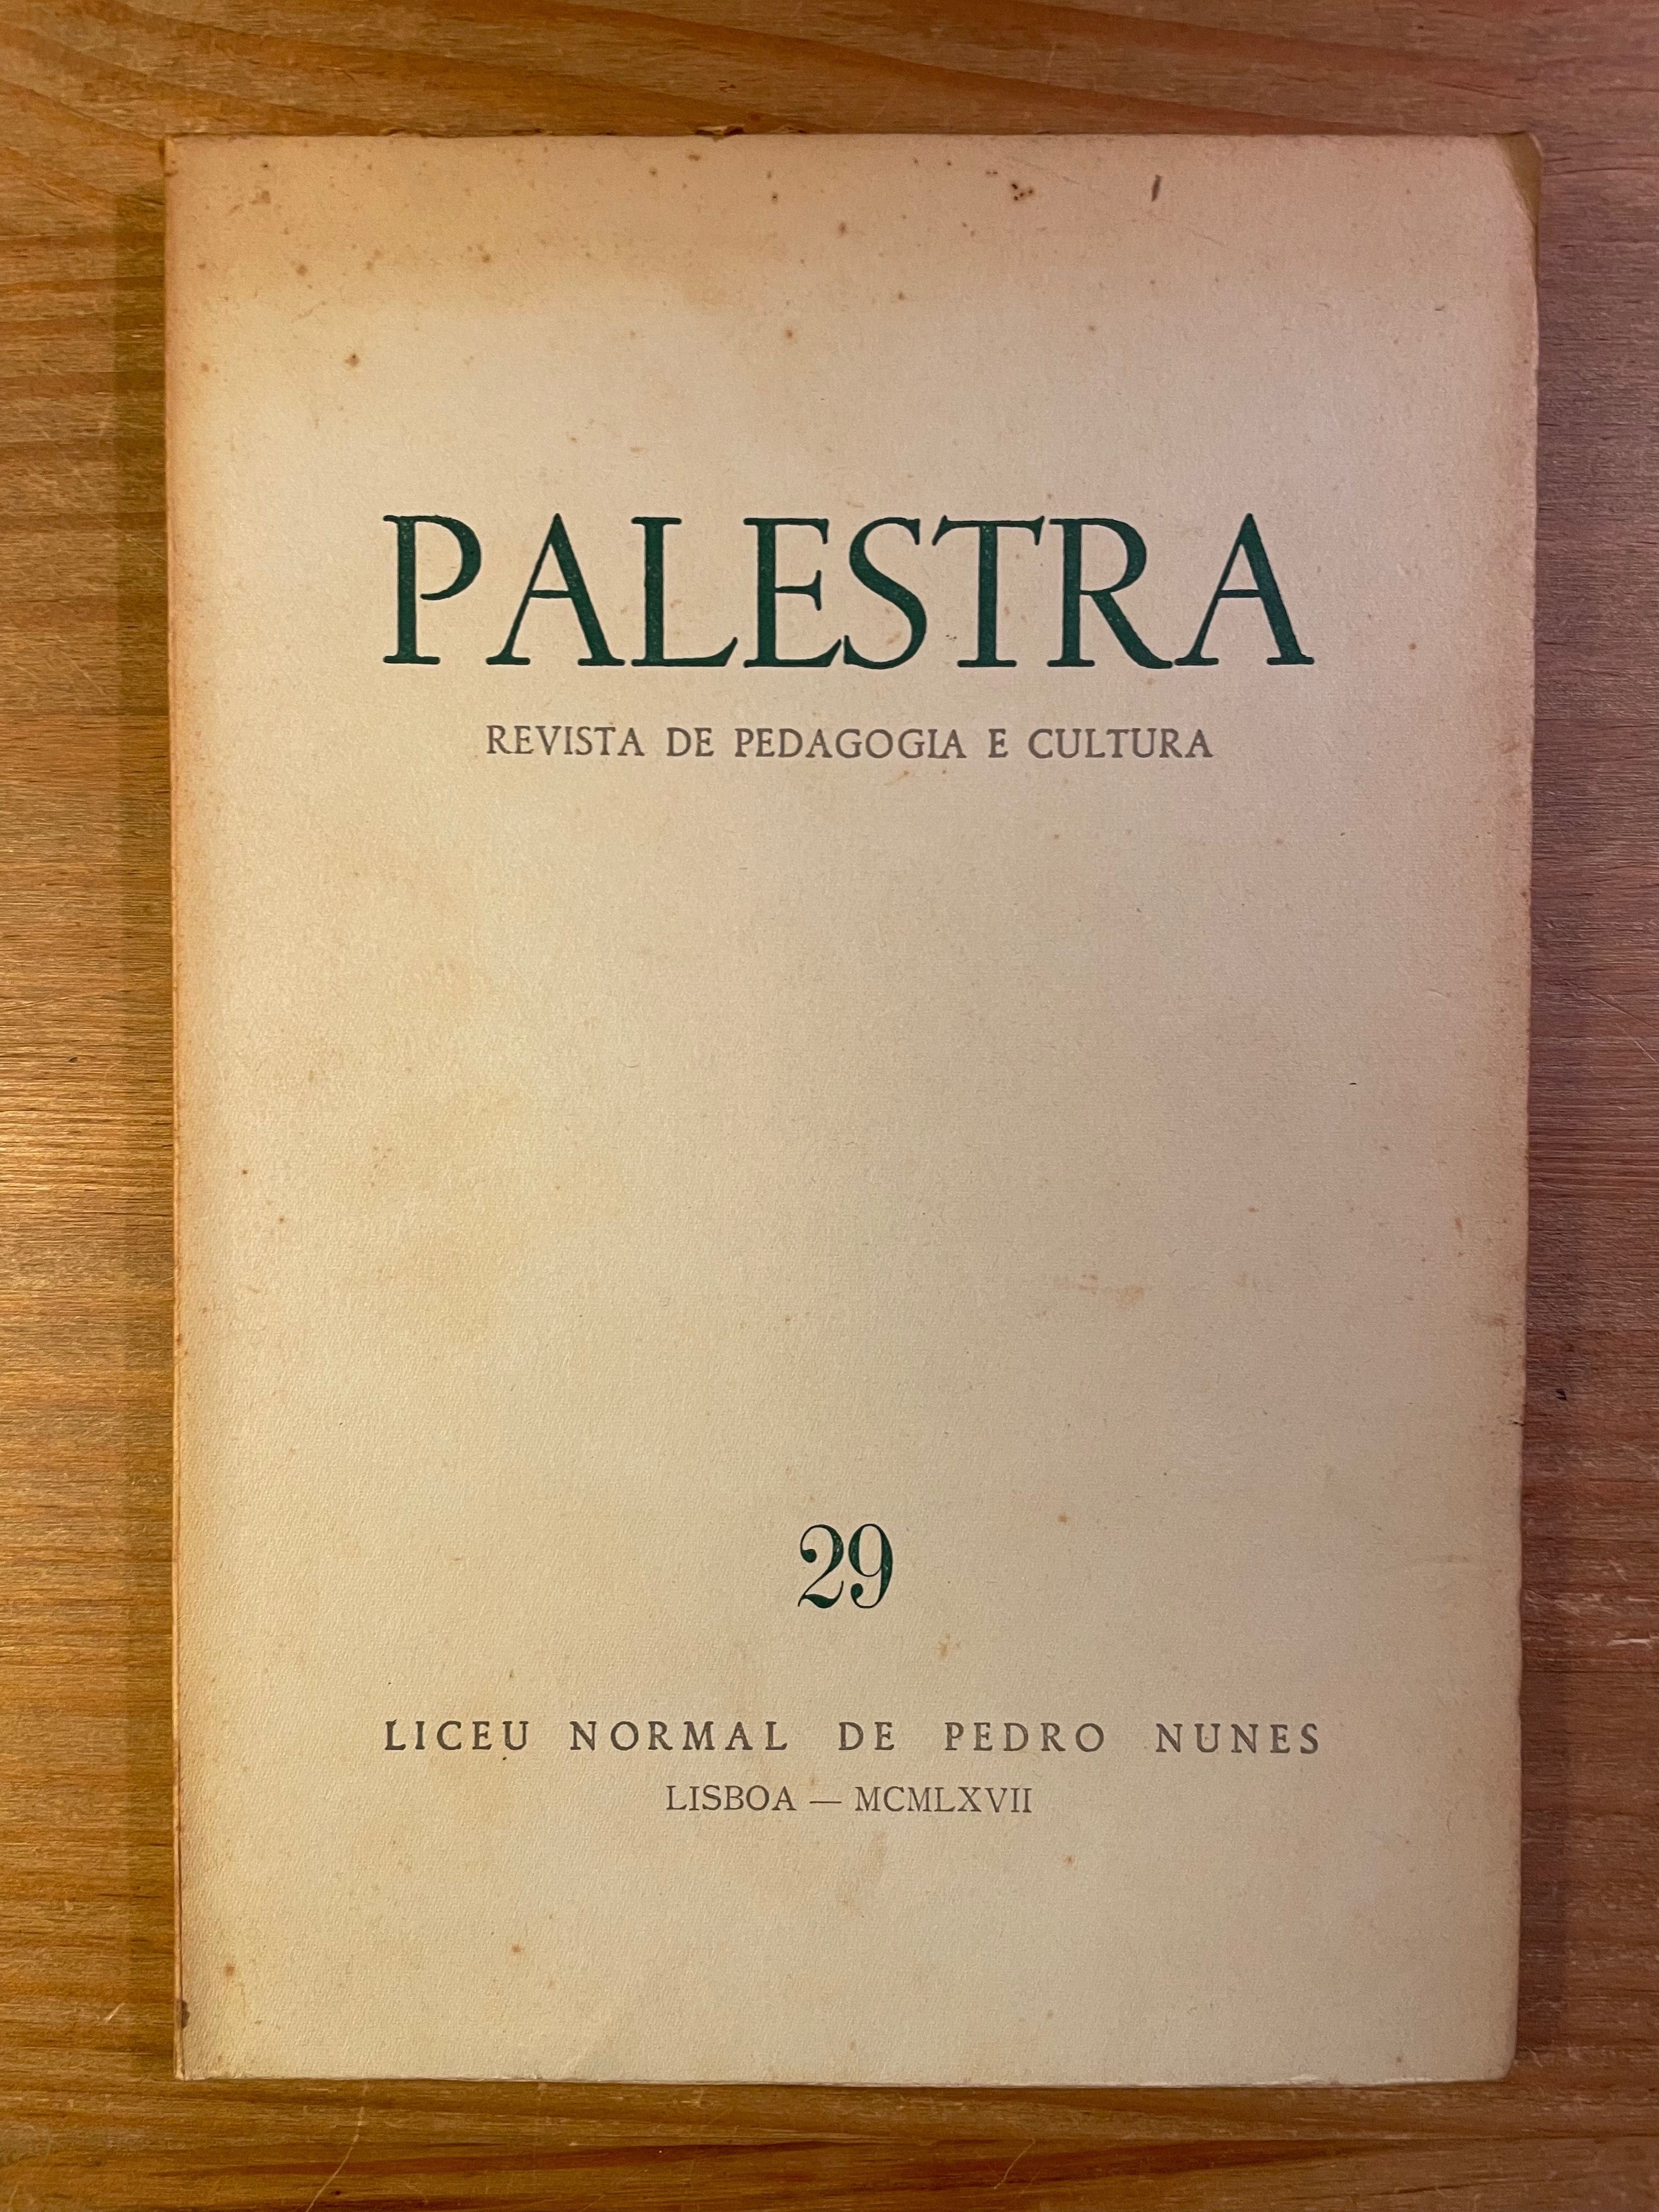 Palestra - Revista de Pedagogia e Cultura - 1966 (portes grátis)